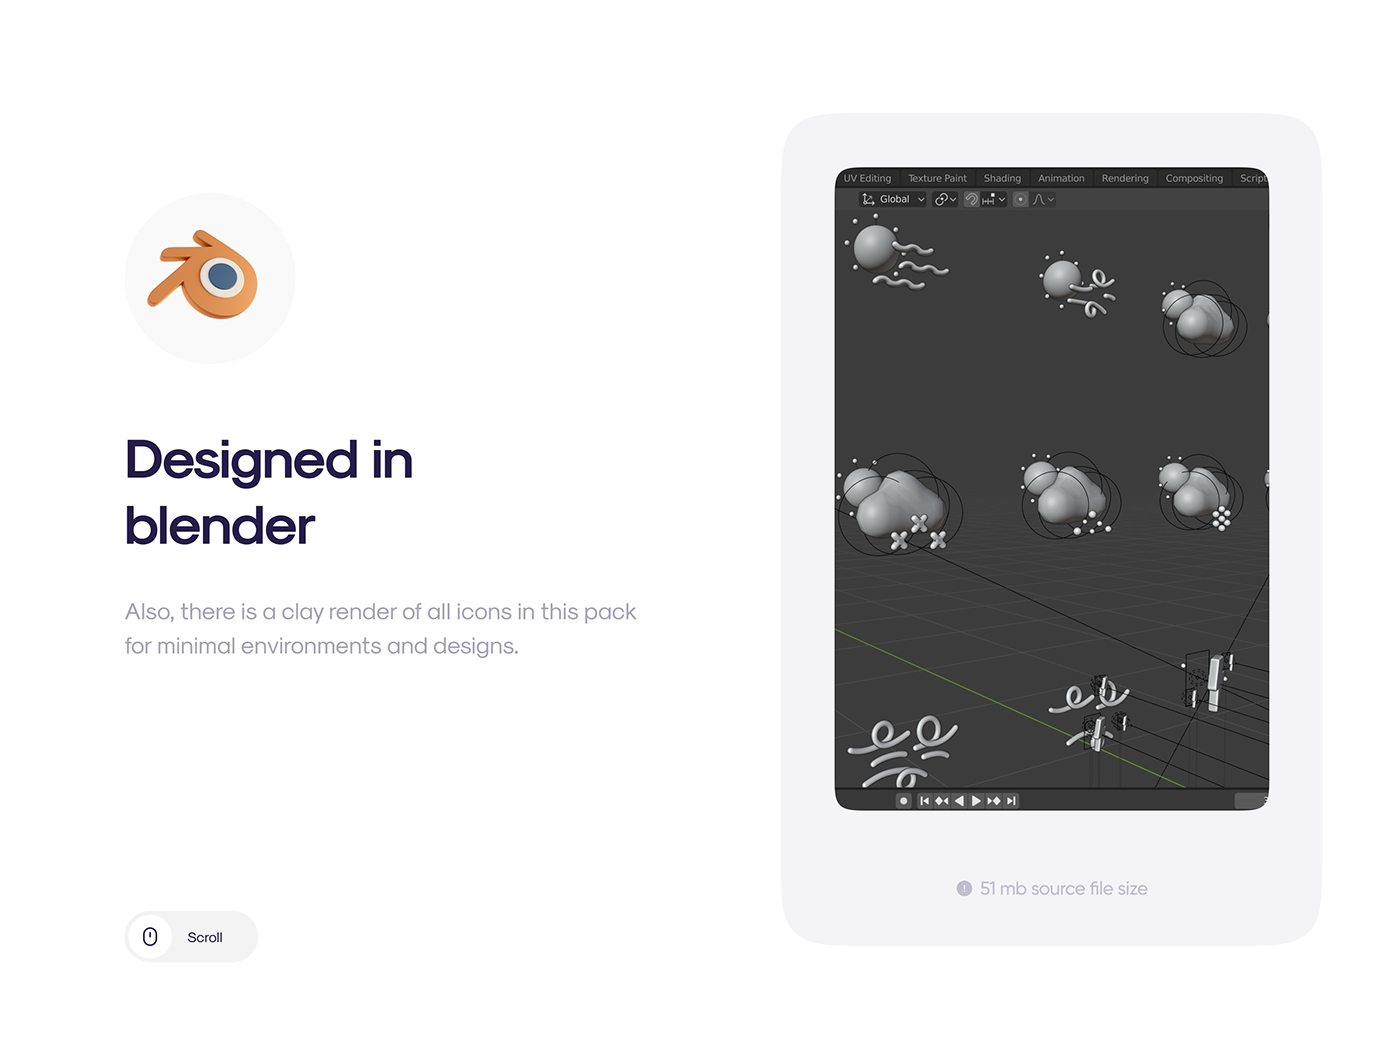 50多个3D高分辨率原始风格和粘土风格完美天气图标包 Weatherly 3D icons – 50+ Weather icons 图标素材 第9张